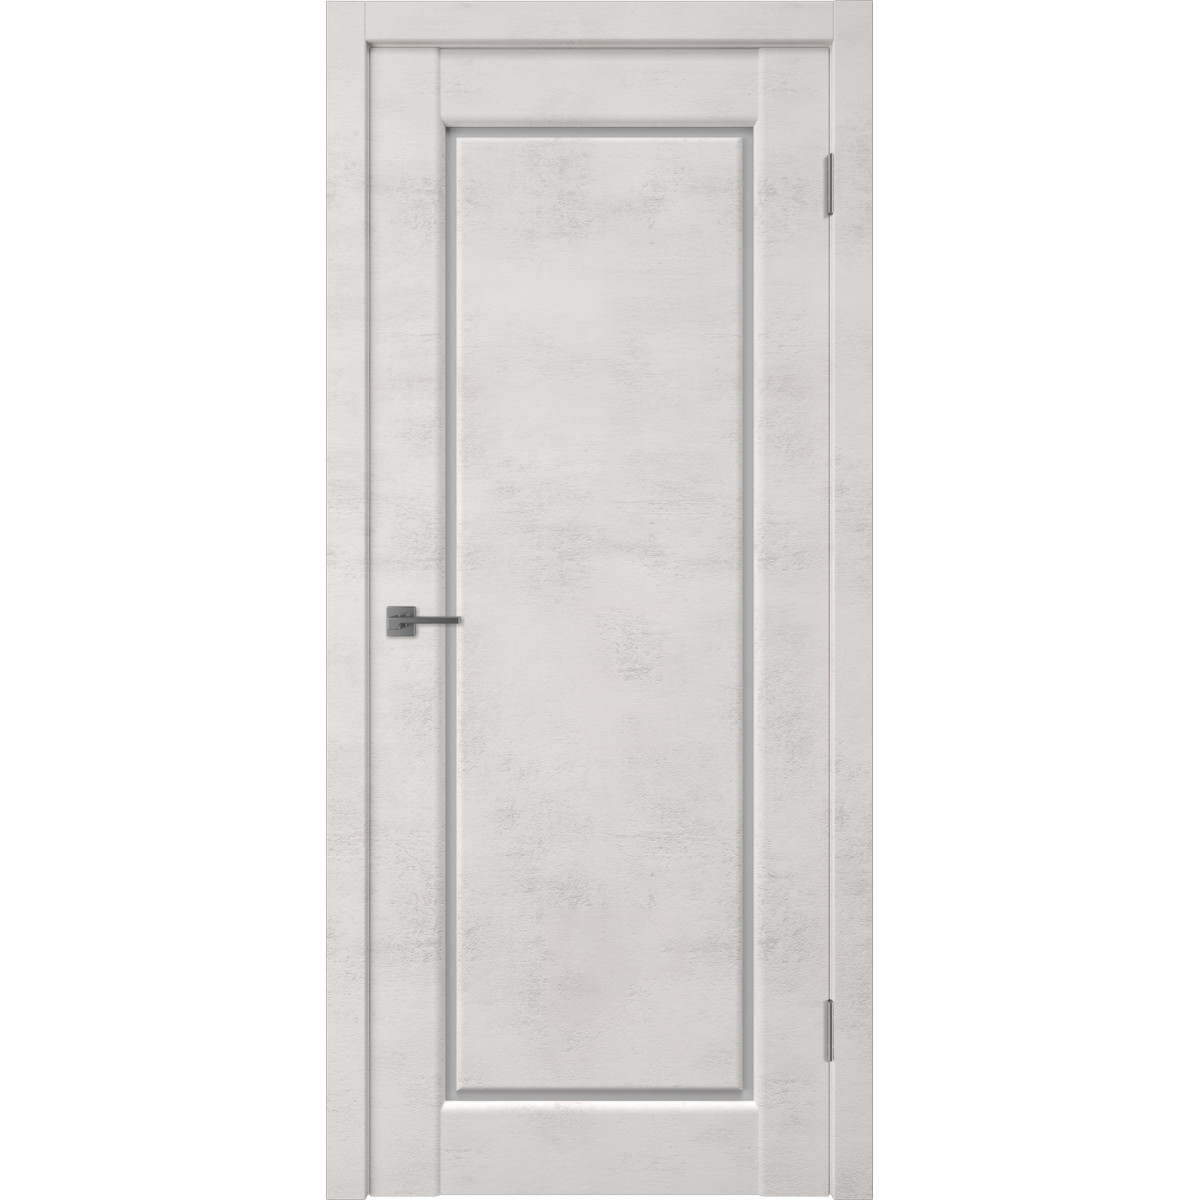 Дверь межкомнатная остеклённая Манхэттен 1 с фурнитурой 80х200 см, ПВХ, цвет лофт крем